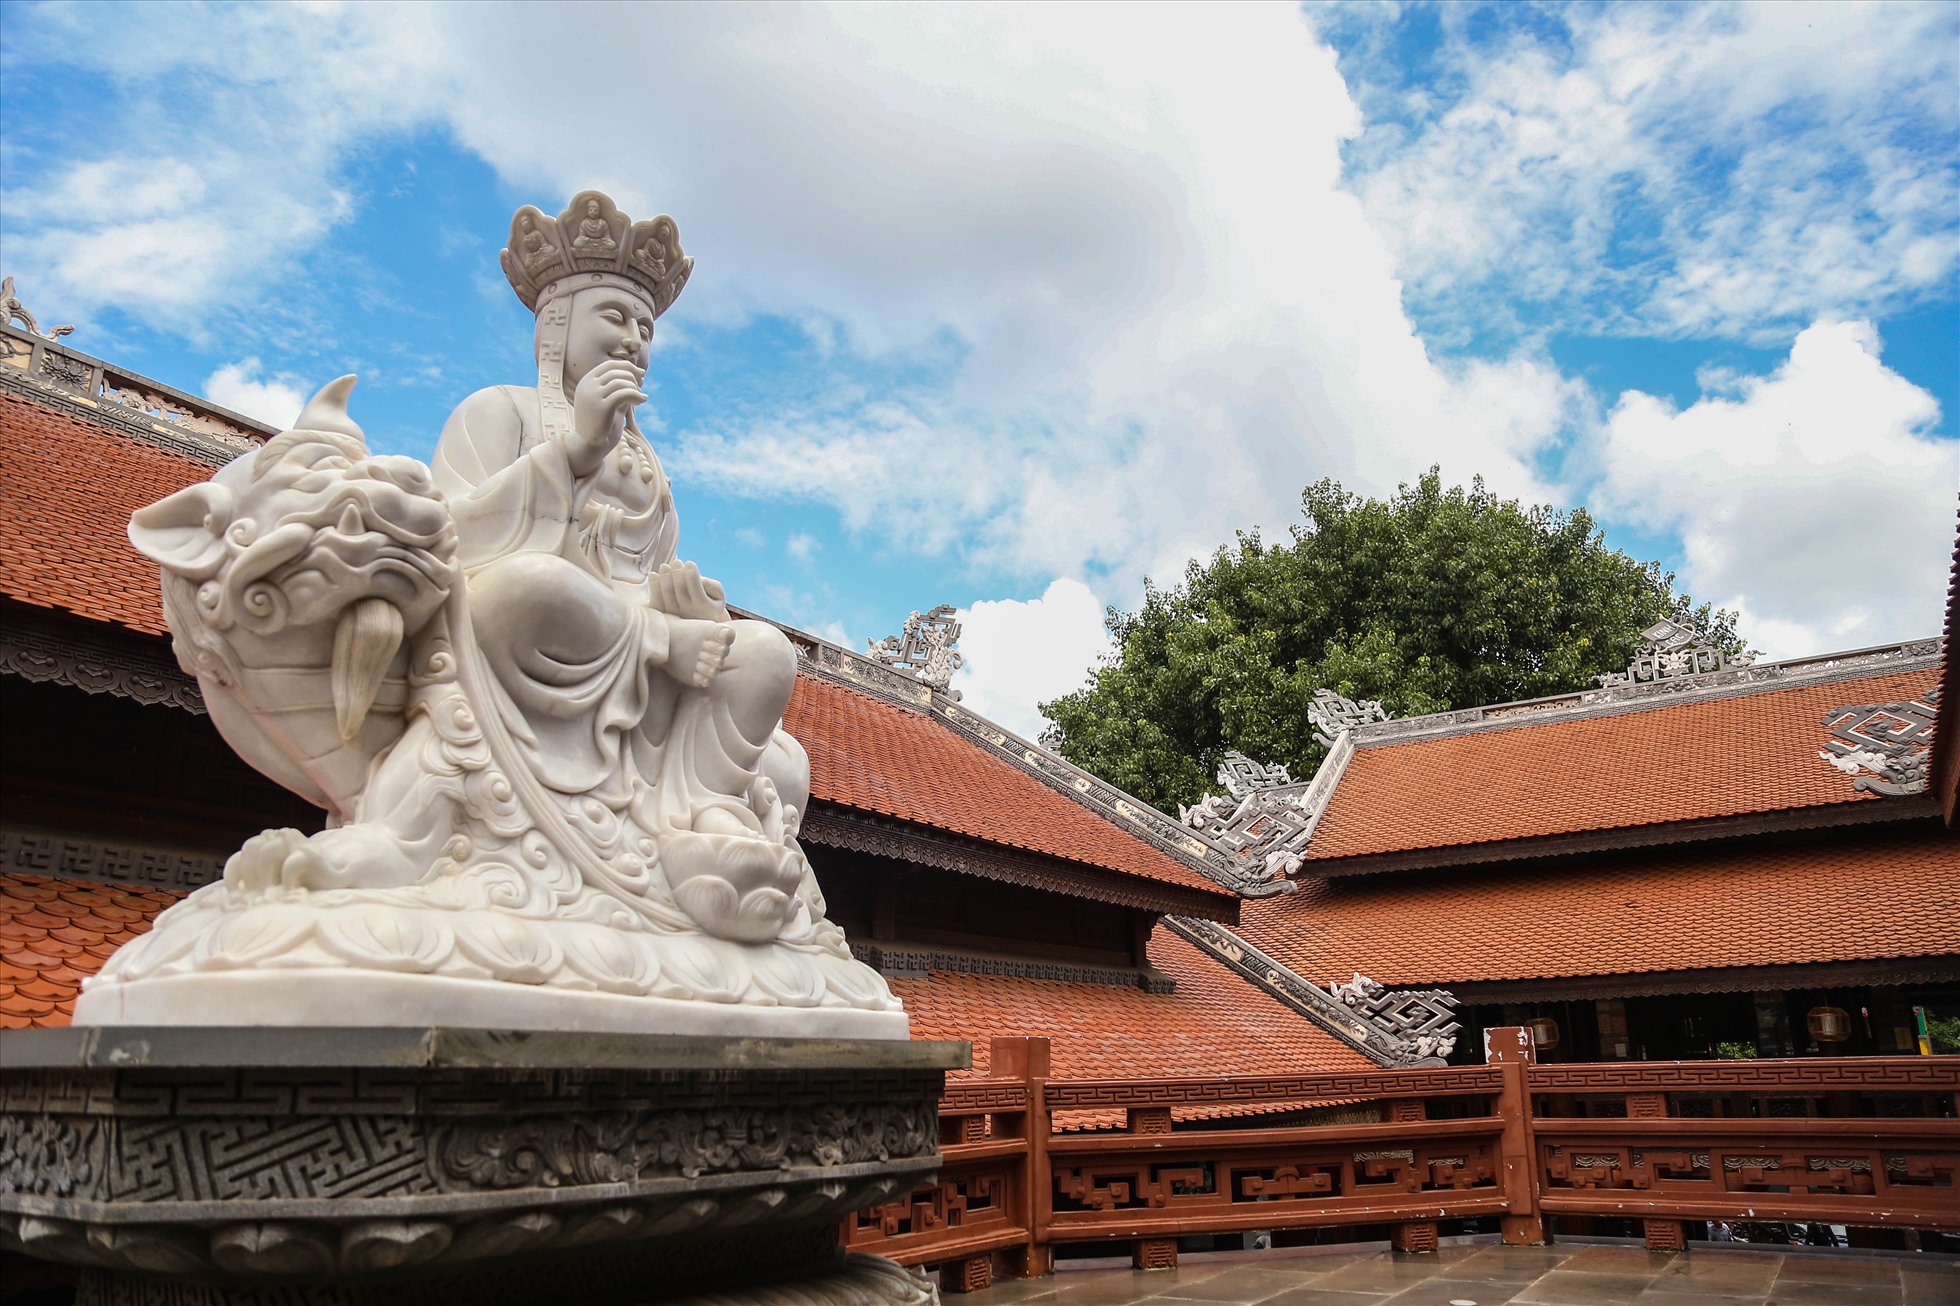 Phía sau chánh điện là nhà hậu tổ, nơi để di ảnh những vị hòa thượng trụ trì cũng như những vị cao tăng có nhiều đóng góp cho Phật giáo ở Tây Nguyên.